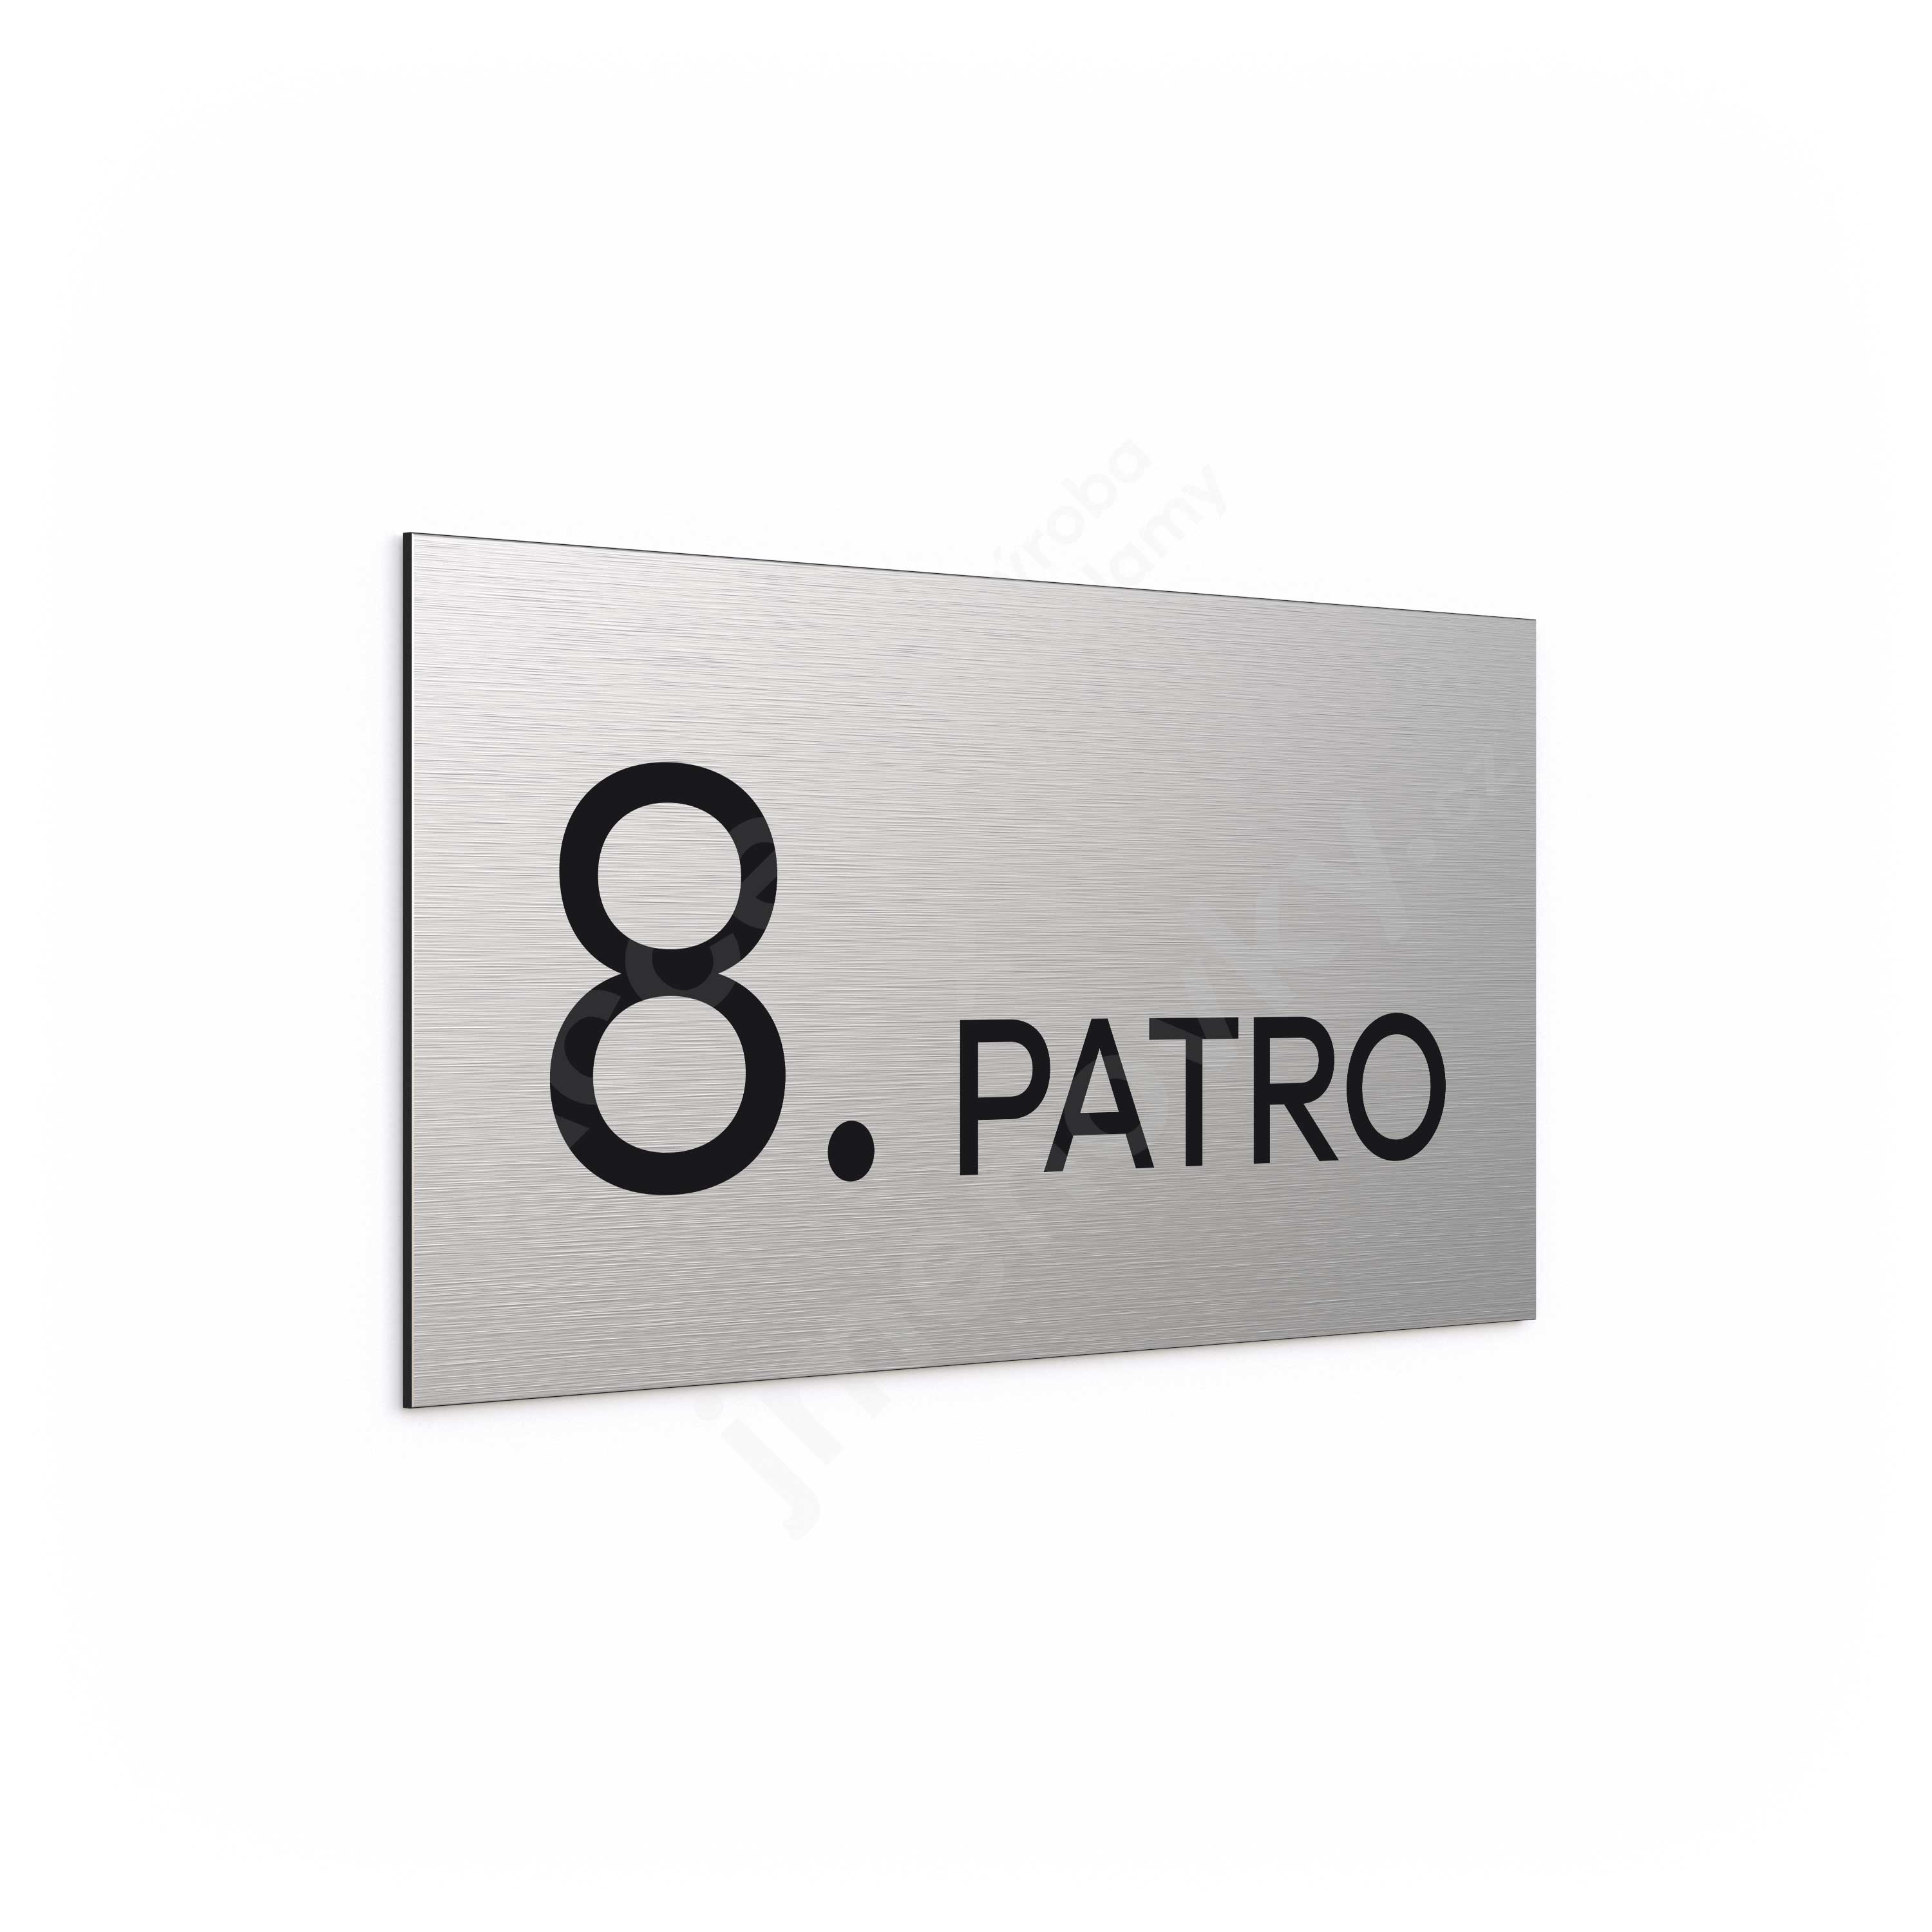 Oznaen podla "8. PATRO" (300 x 150 mm)